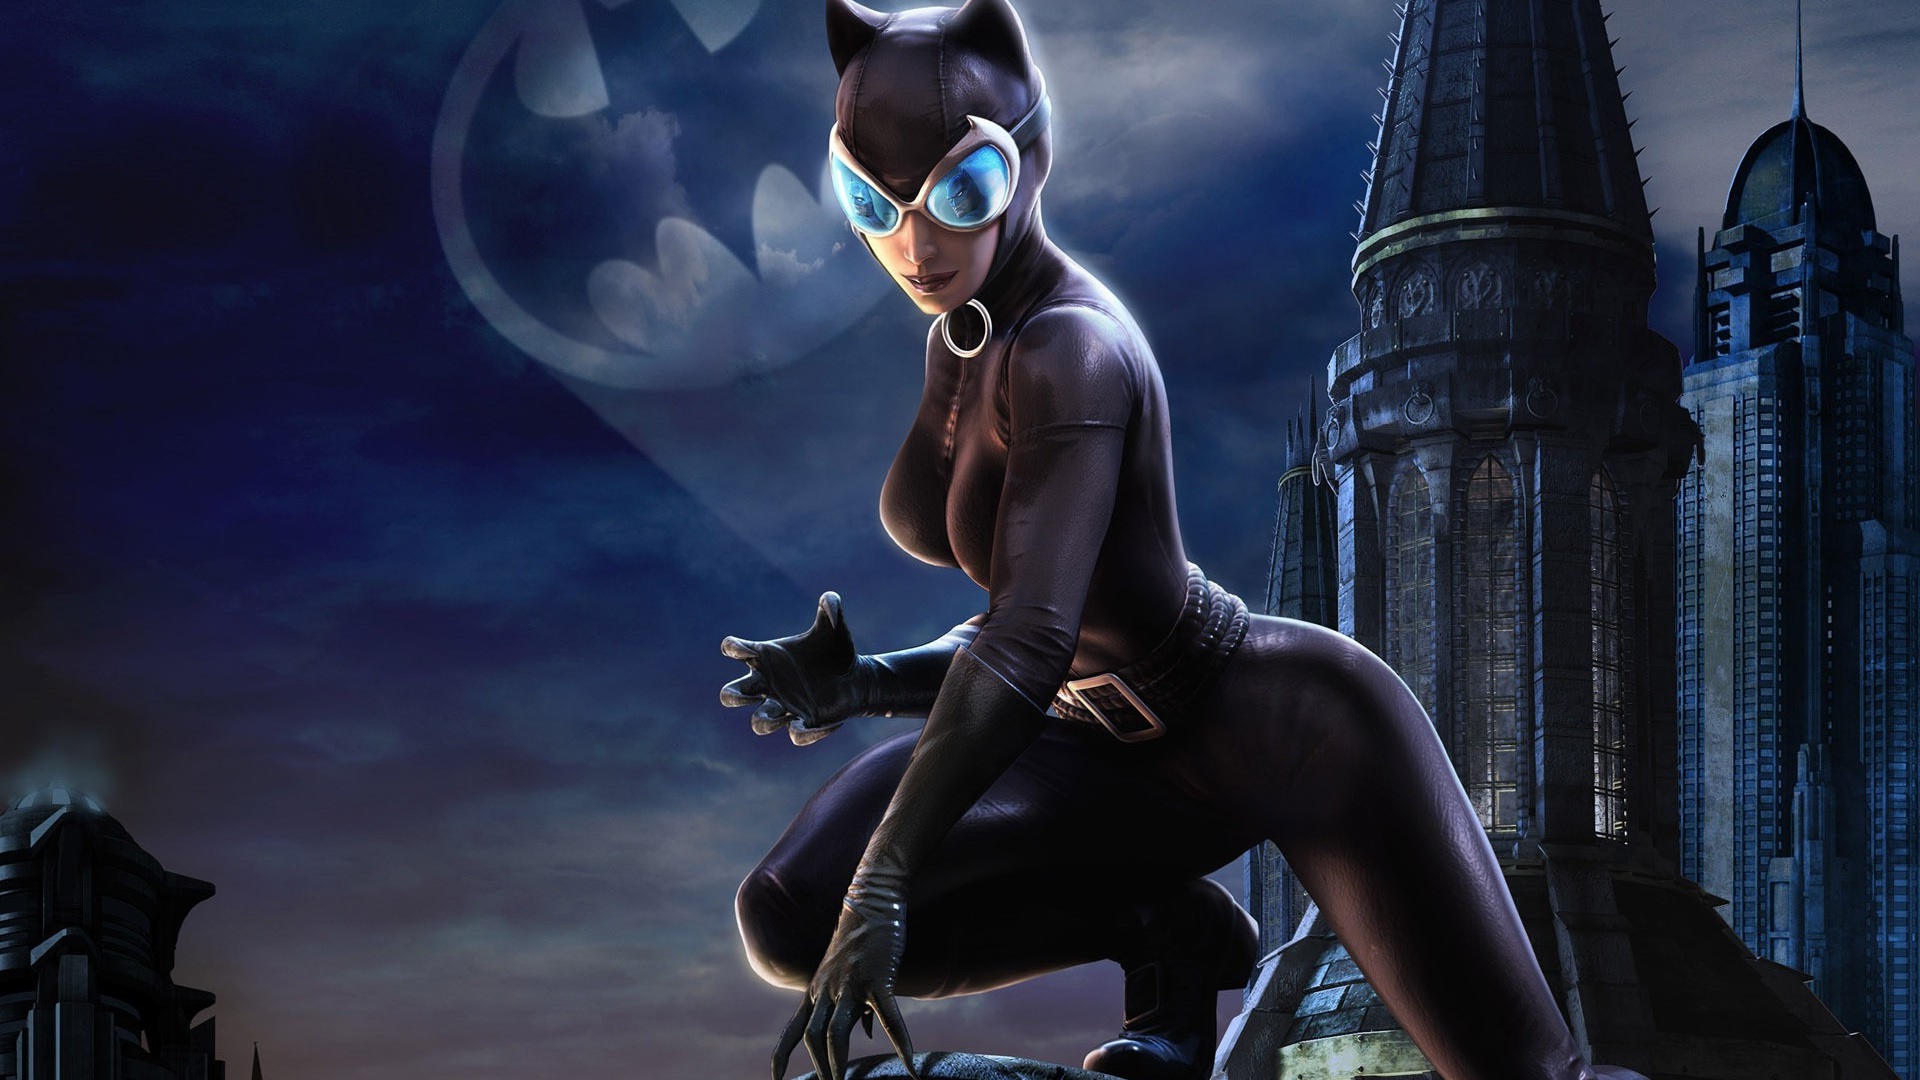 catwoman hd wallpaper,erfundener charakter,katzenfrau,cg kunstwerk,batman,superschurke